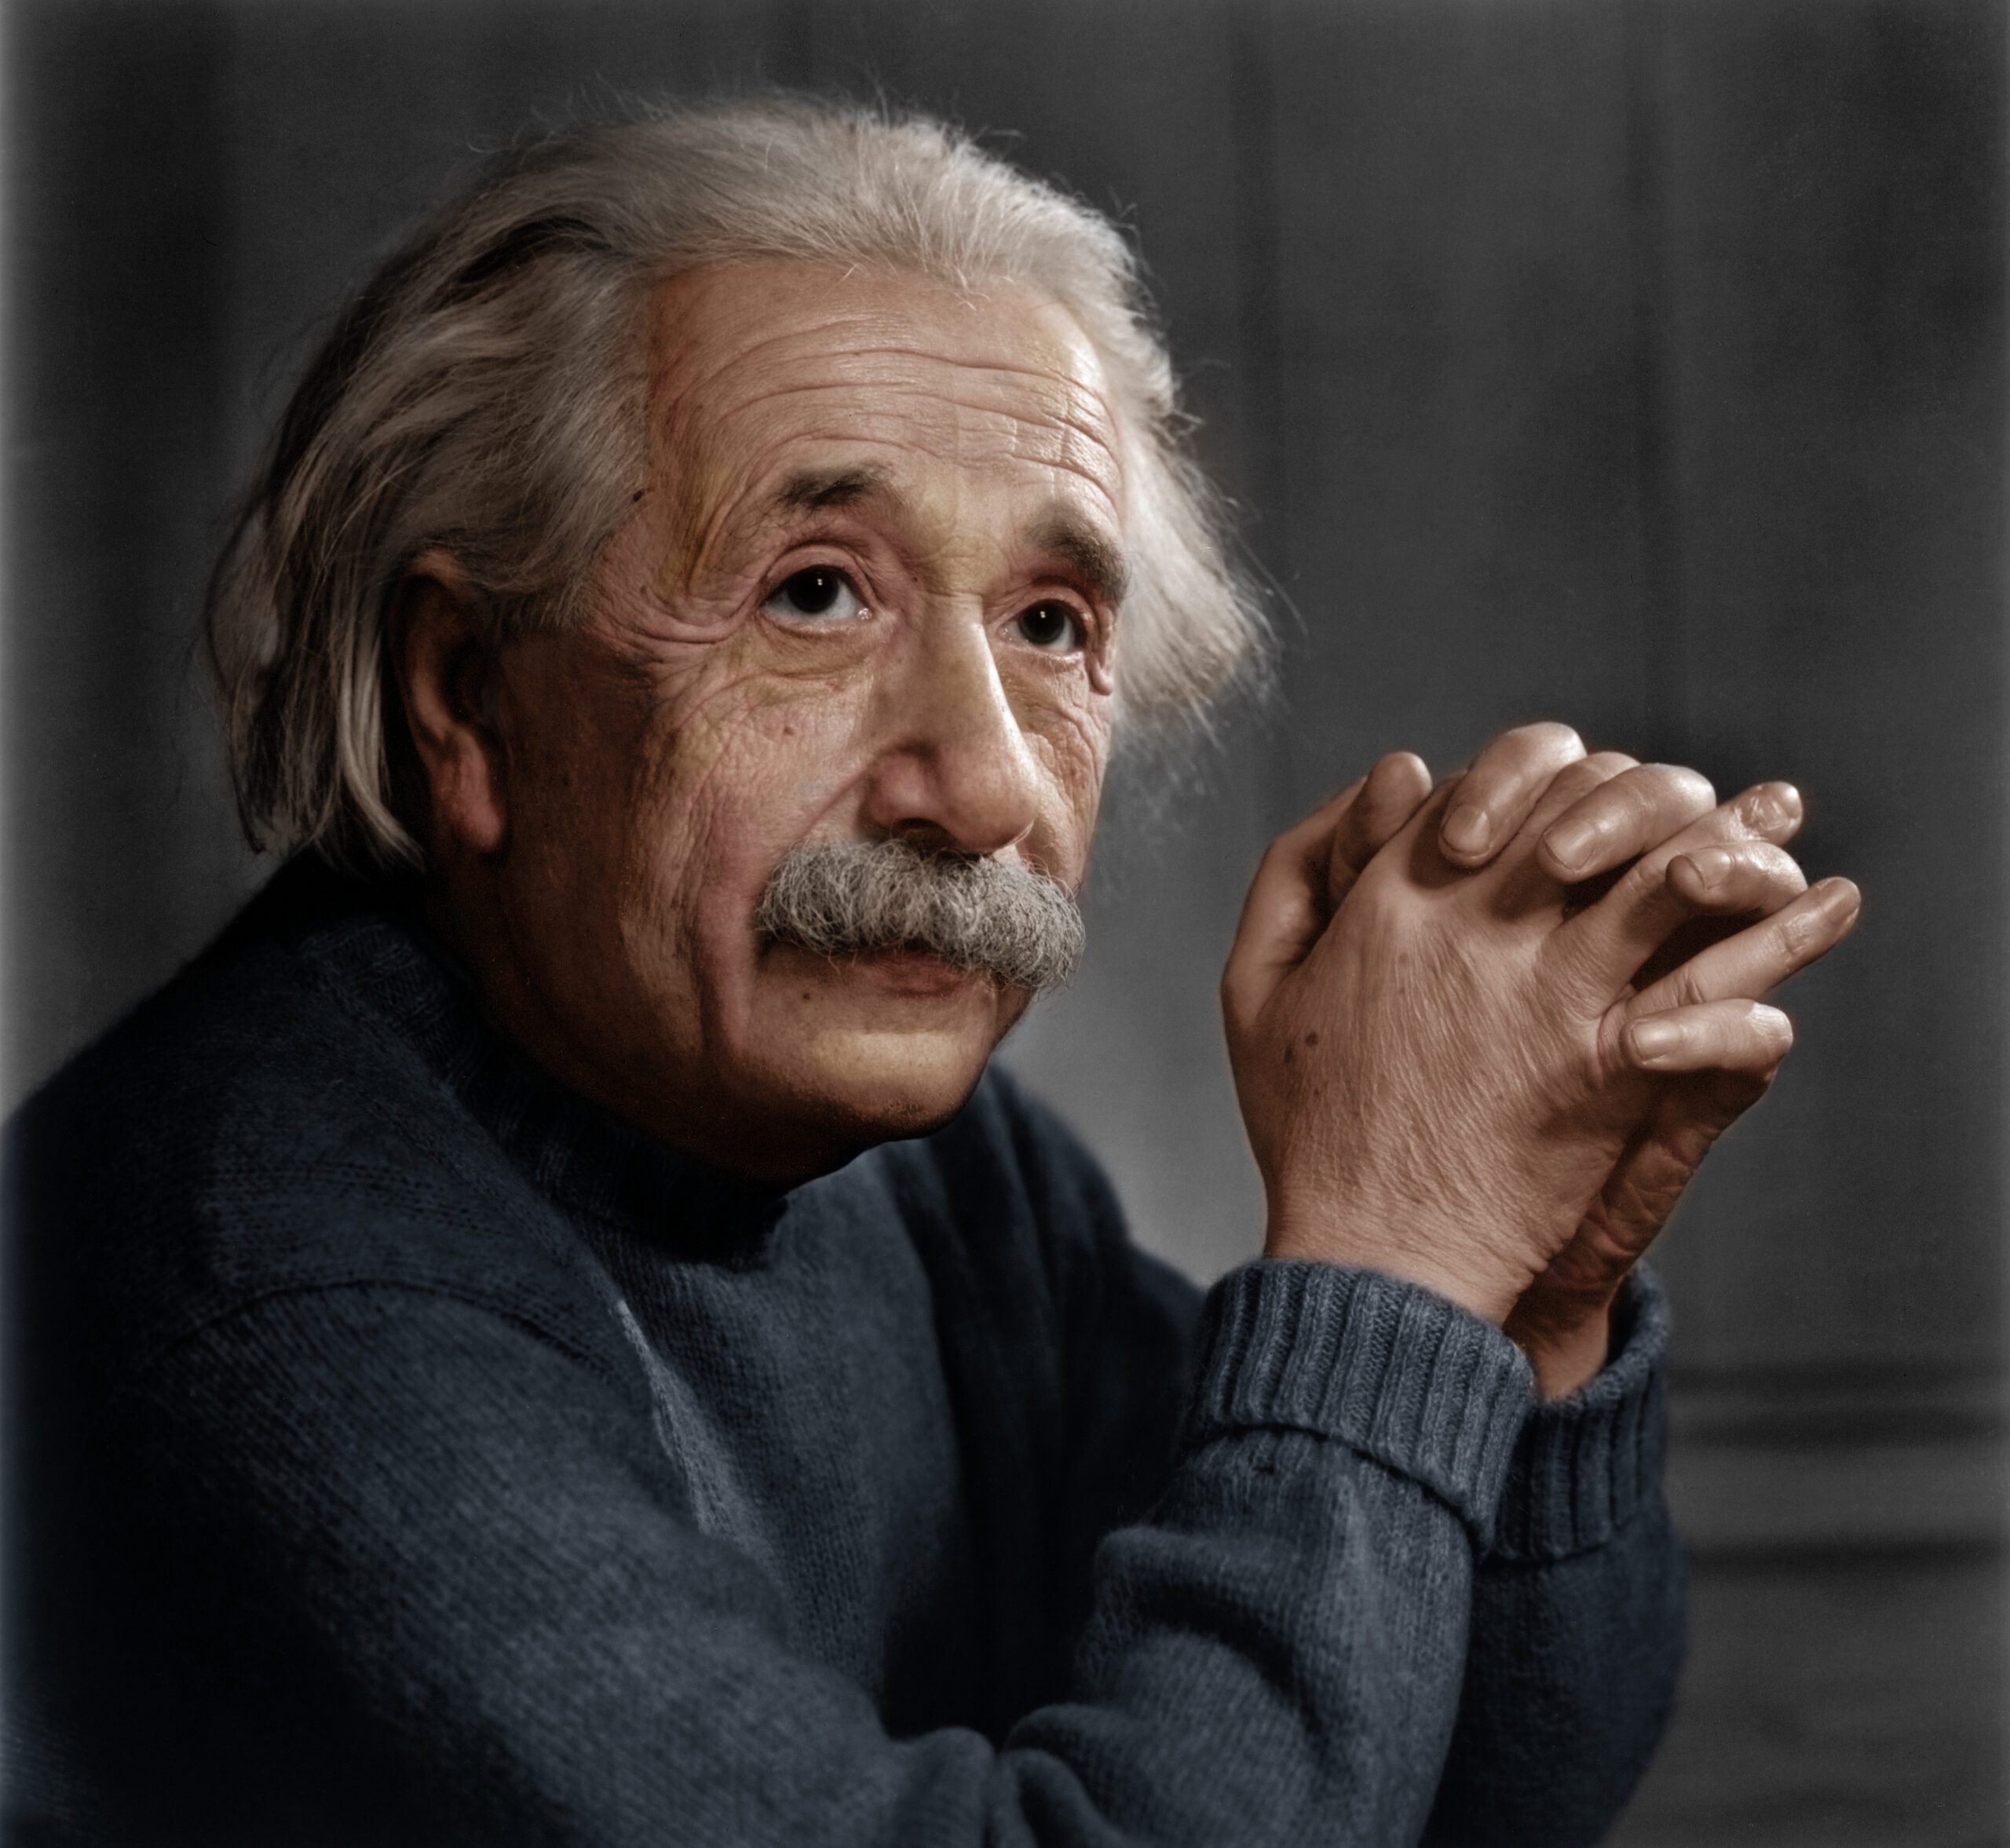 Pour les ondes gravitationnelles, il aura fallu 100 ans pour confirmer la thèse d’Einstein